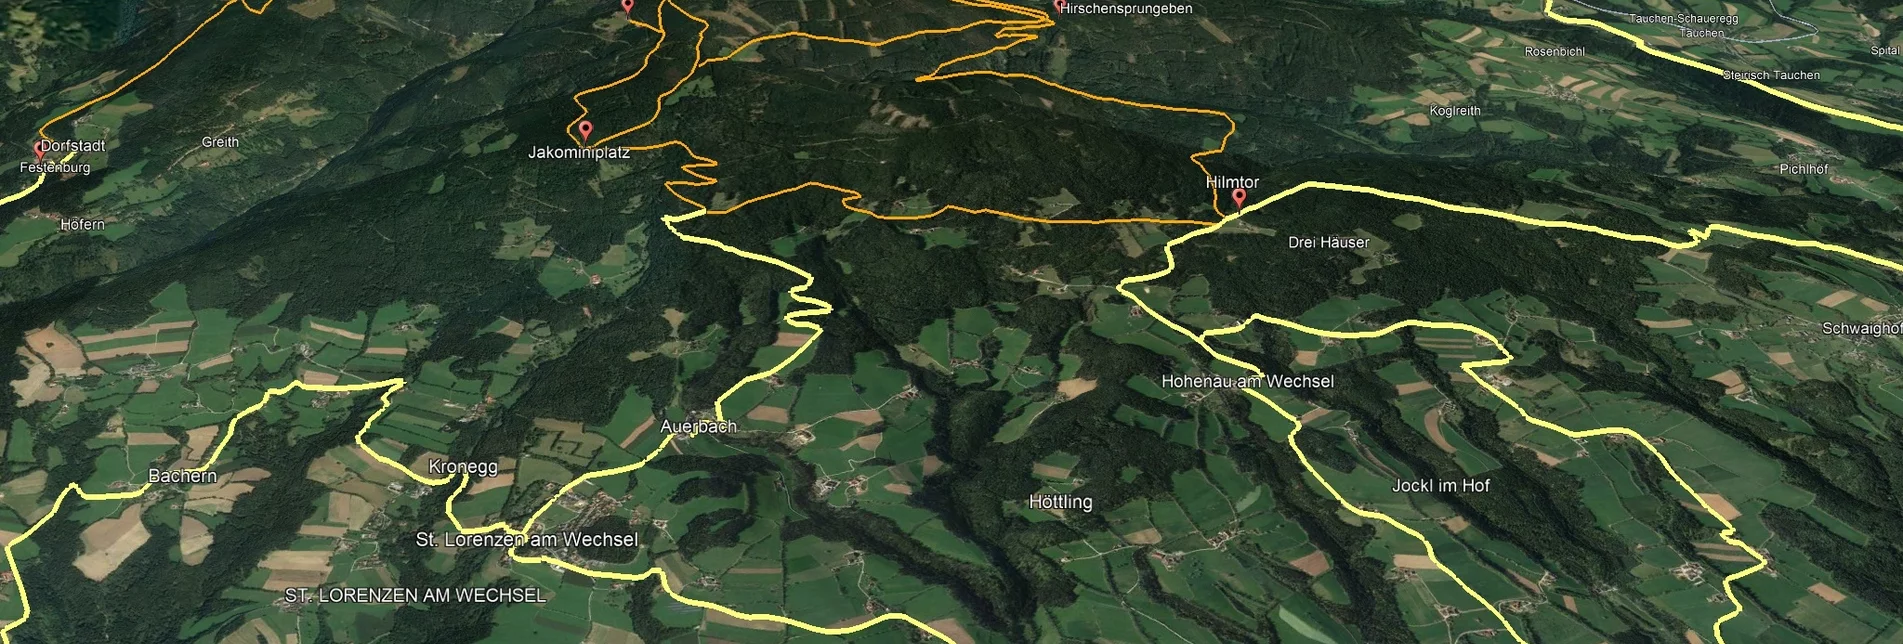 Mountainbike Steirische Wexl Trails - Zubringer Bruck an der Lafnitz nach St. Lorenzen am Wechsel (Anbindung) - Touren-Impression #1 | © Verein Tourismusentwicklung Steirischer Wechsel